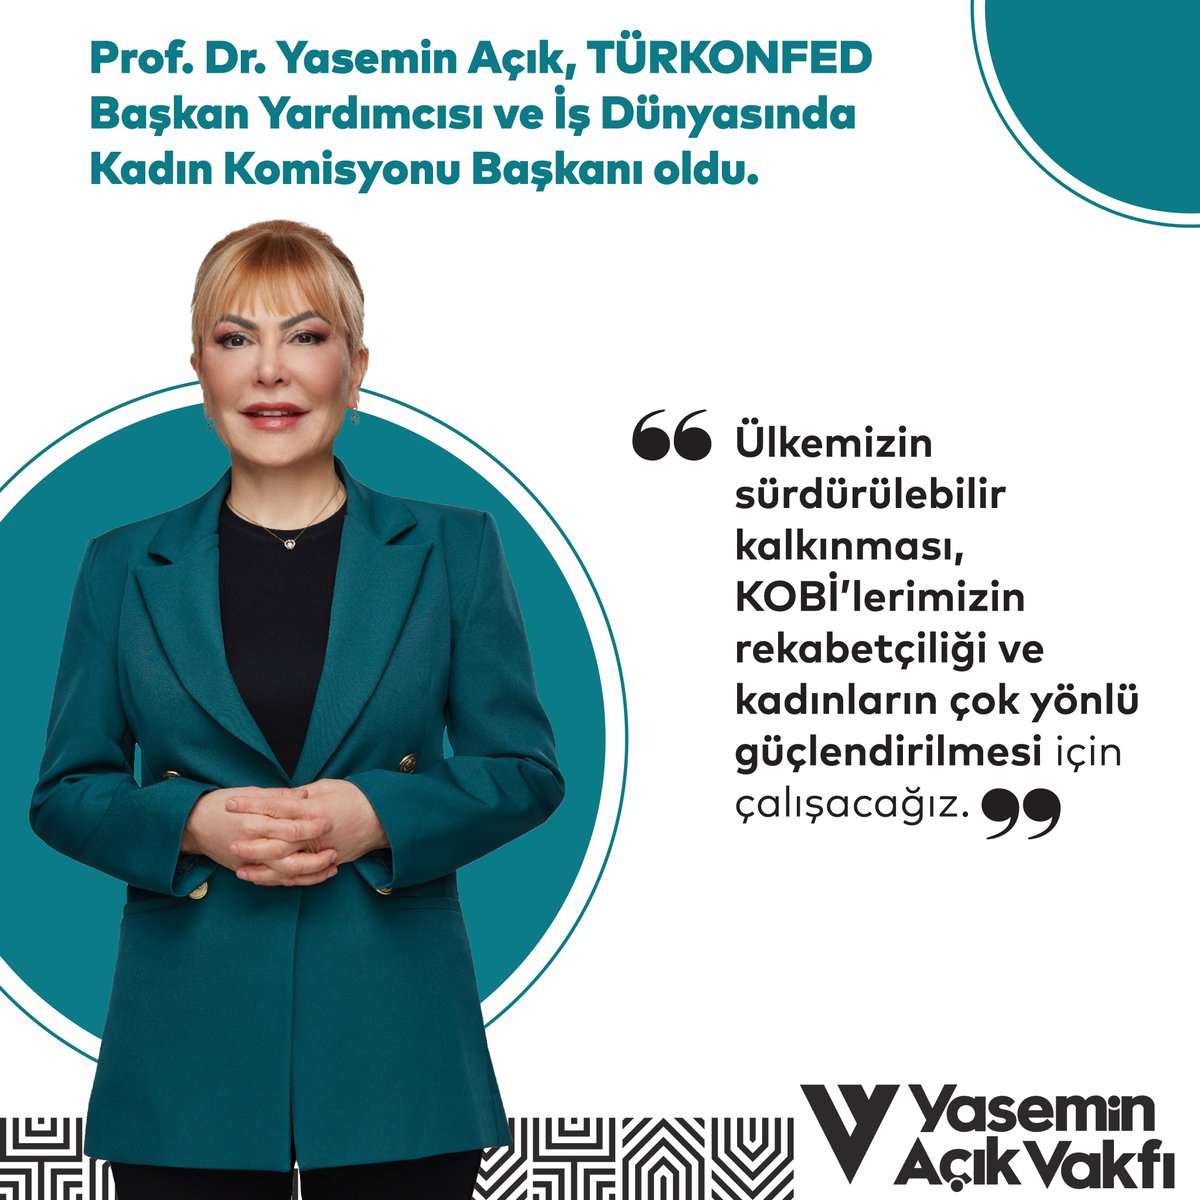 Vakıf Mütevelli Heyeti Başkanımız @yaseminacik, TÜRKONFED Bşk. Yrd. ve İDK Komisyonu Bşk. olarak 'Ülkemizin sürdürülebilir kalkınması, rekabetçiliği ve kadınların çok yönlü güçlendirilmesi için çalışacağız' dedi. @turkonfed, @Ssonmez01 @firatsifed bit.ly/49pZdiF